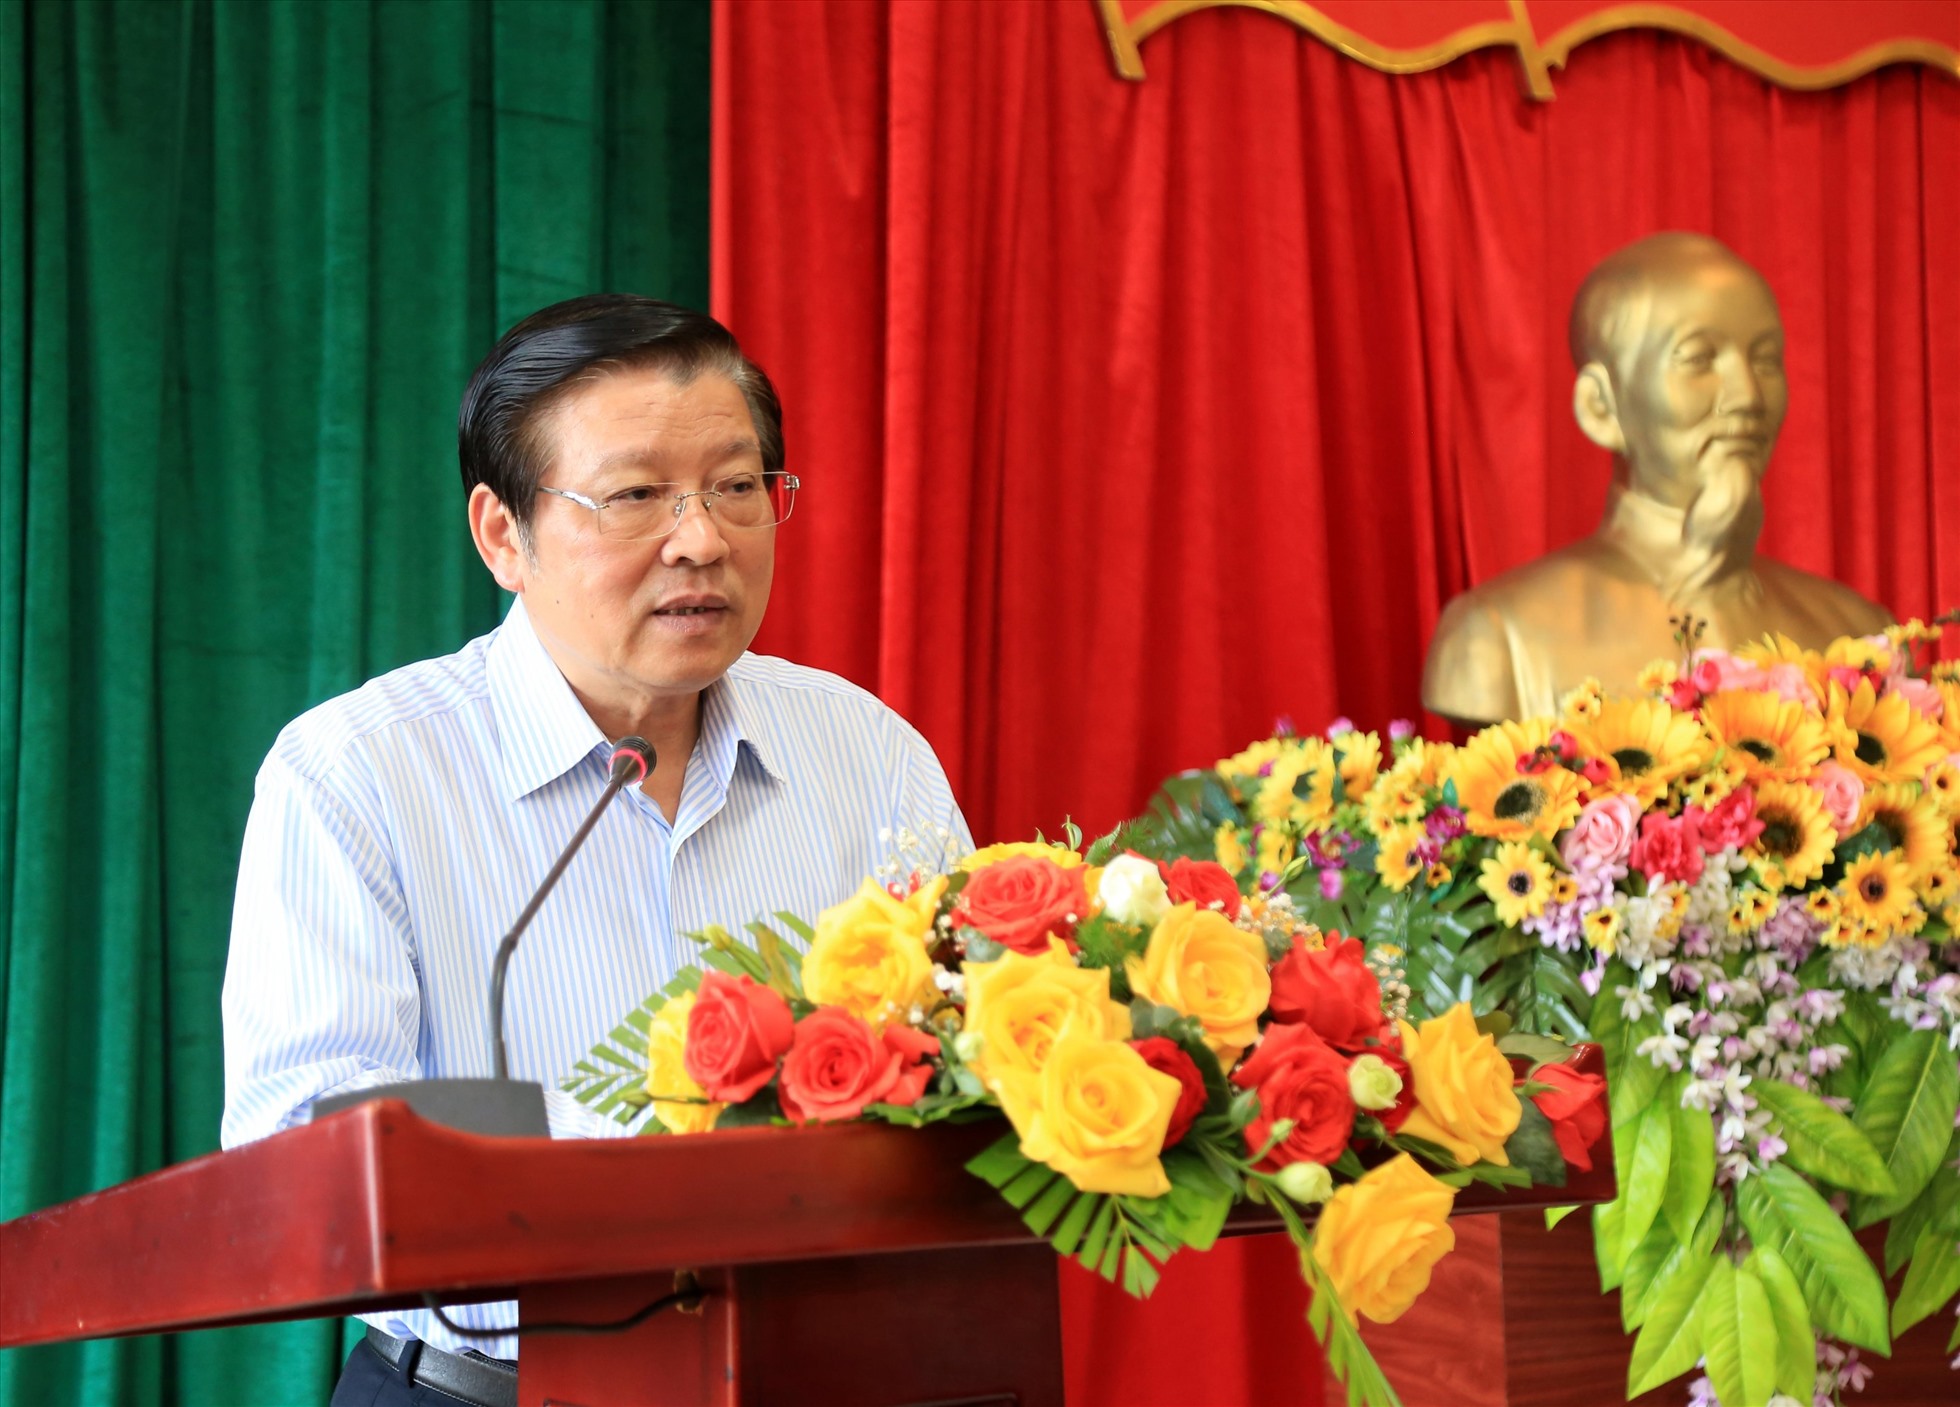 Ông Phan Đình Trạc, Ủy viên Bộ Chính trị, Bí thư Trung ương Đảng, Trưởng Ban Nội chính Trung ương phát biểu tại buổi làm việc với Ban Thường vụ tỉnh Đắk Nông. Ảnh: Phan Tuấn